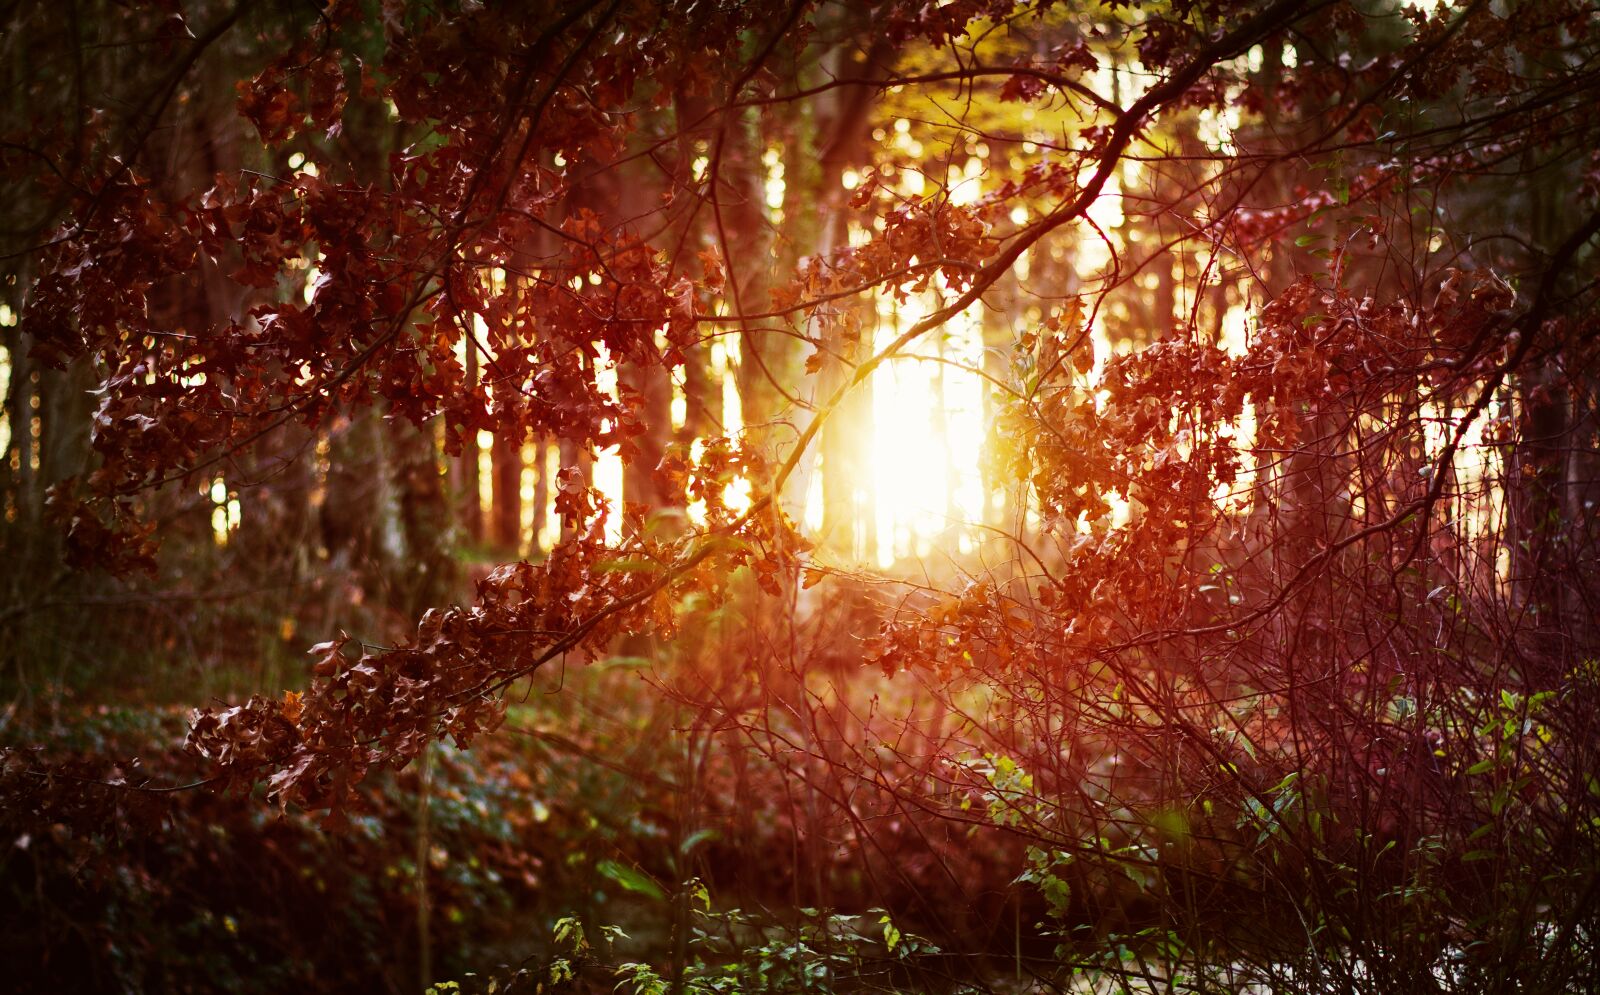 Sony SLT-A55 (SLT-A55V) + Minolta AF 50mm F1.4 [New] sample photo. Forest, sunset, shrubs photography